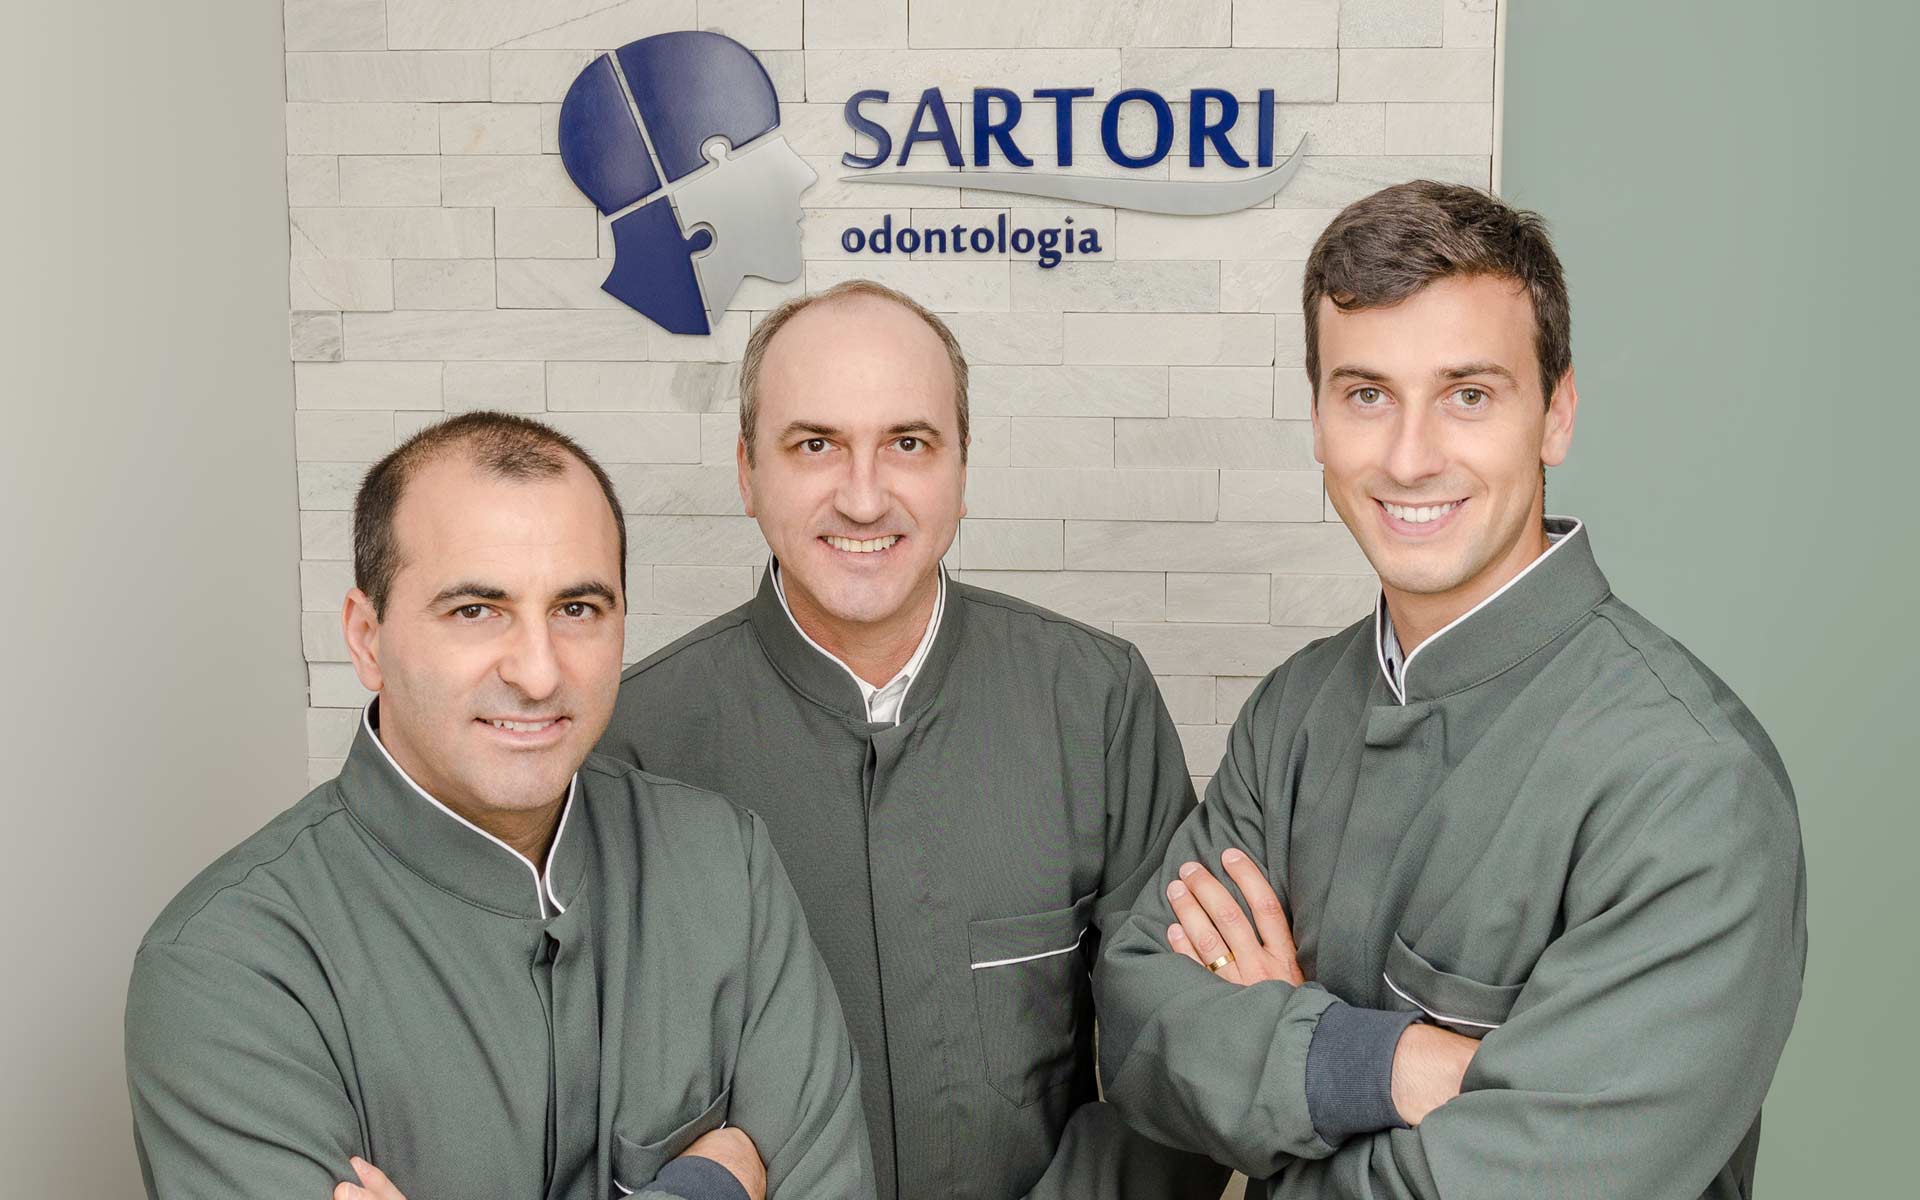 Irmãos Sartori: 26 anos de odontologia